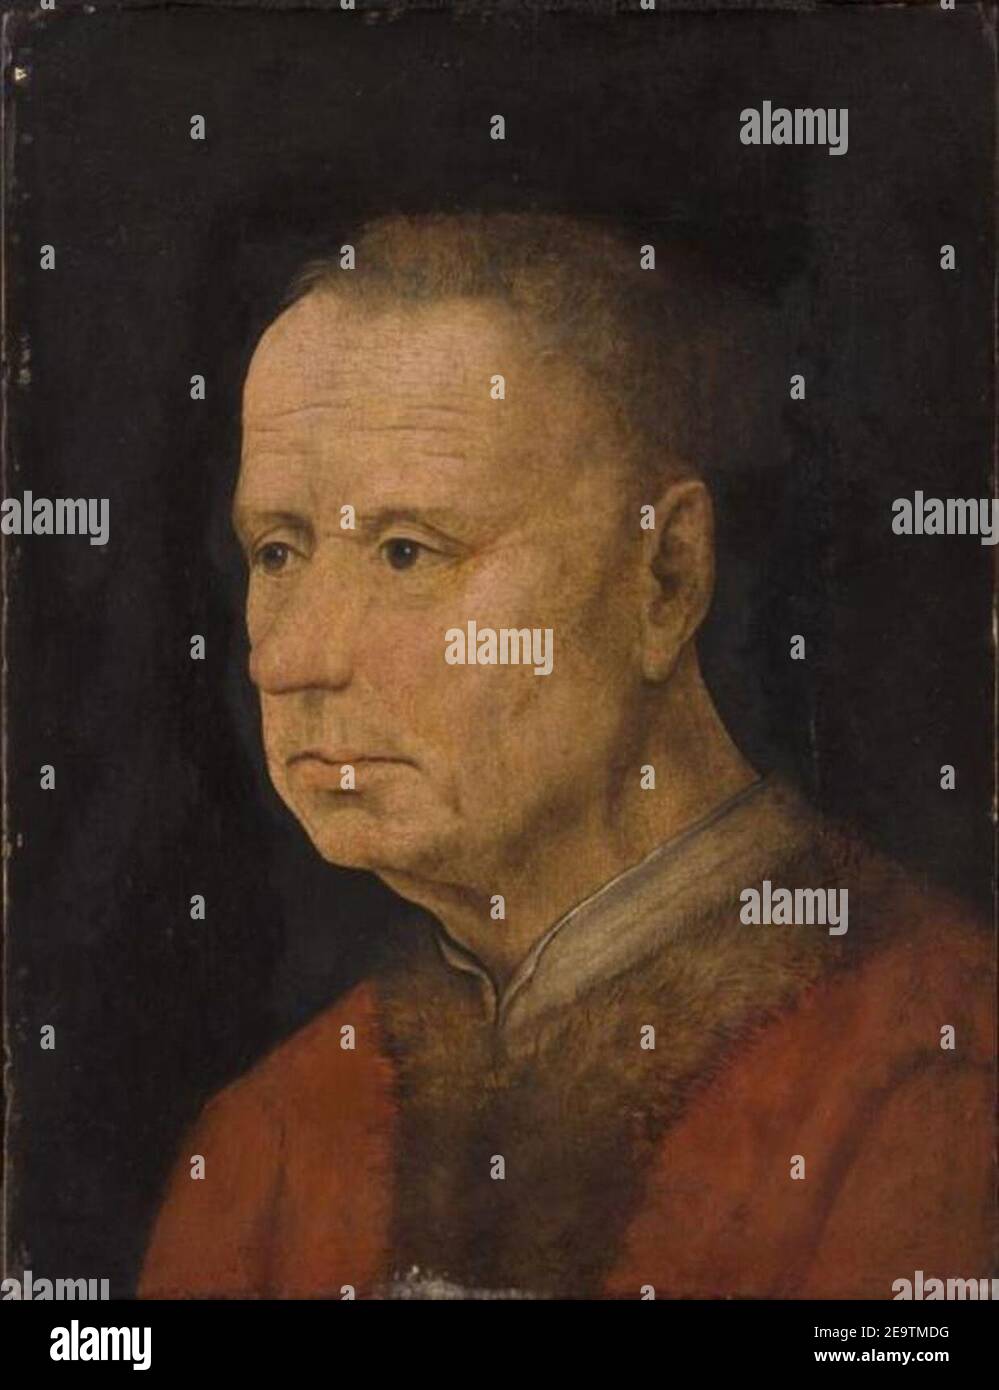 Naar Jan van Eyck - Portret van een man Stock Photo - Alamy